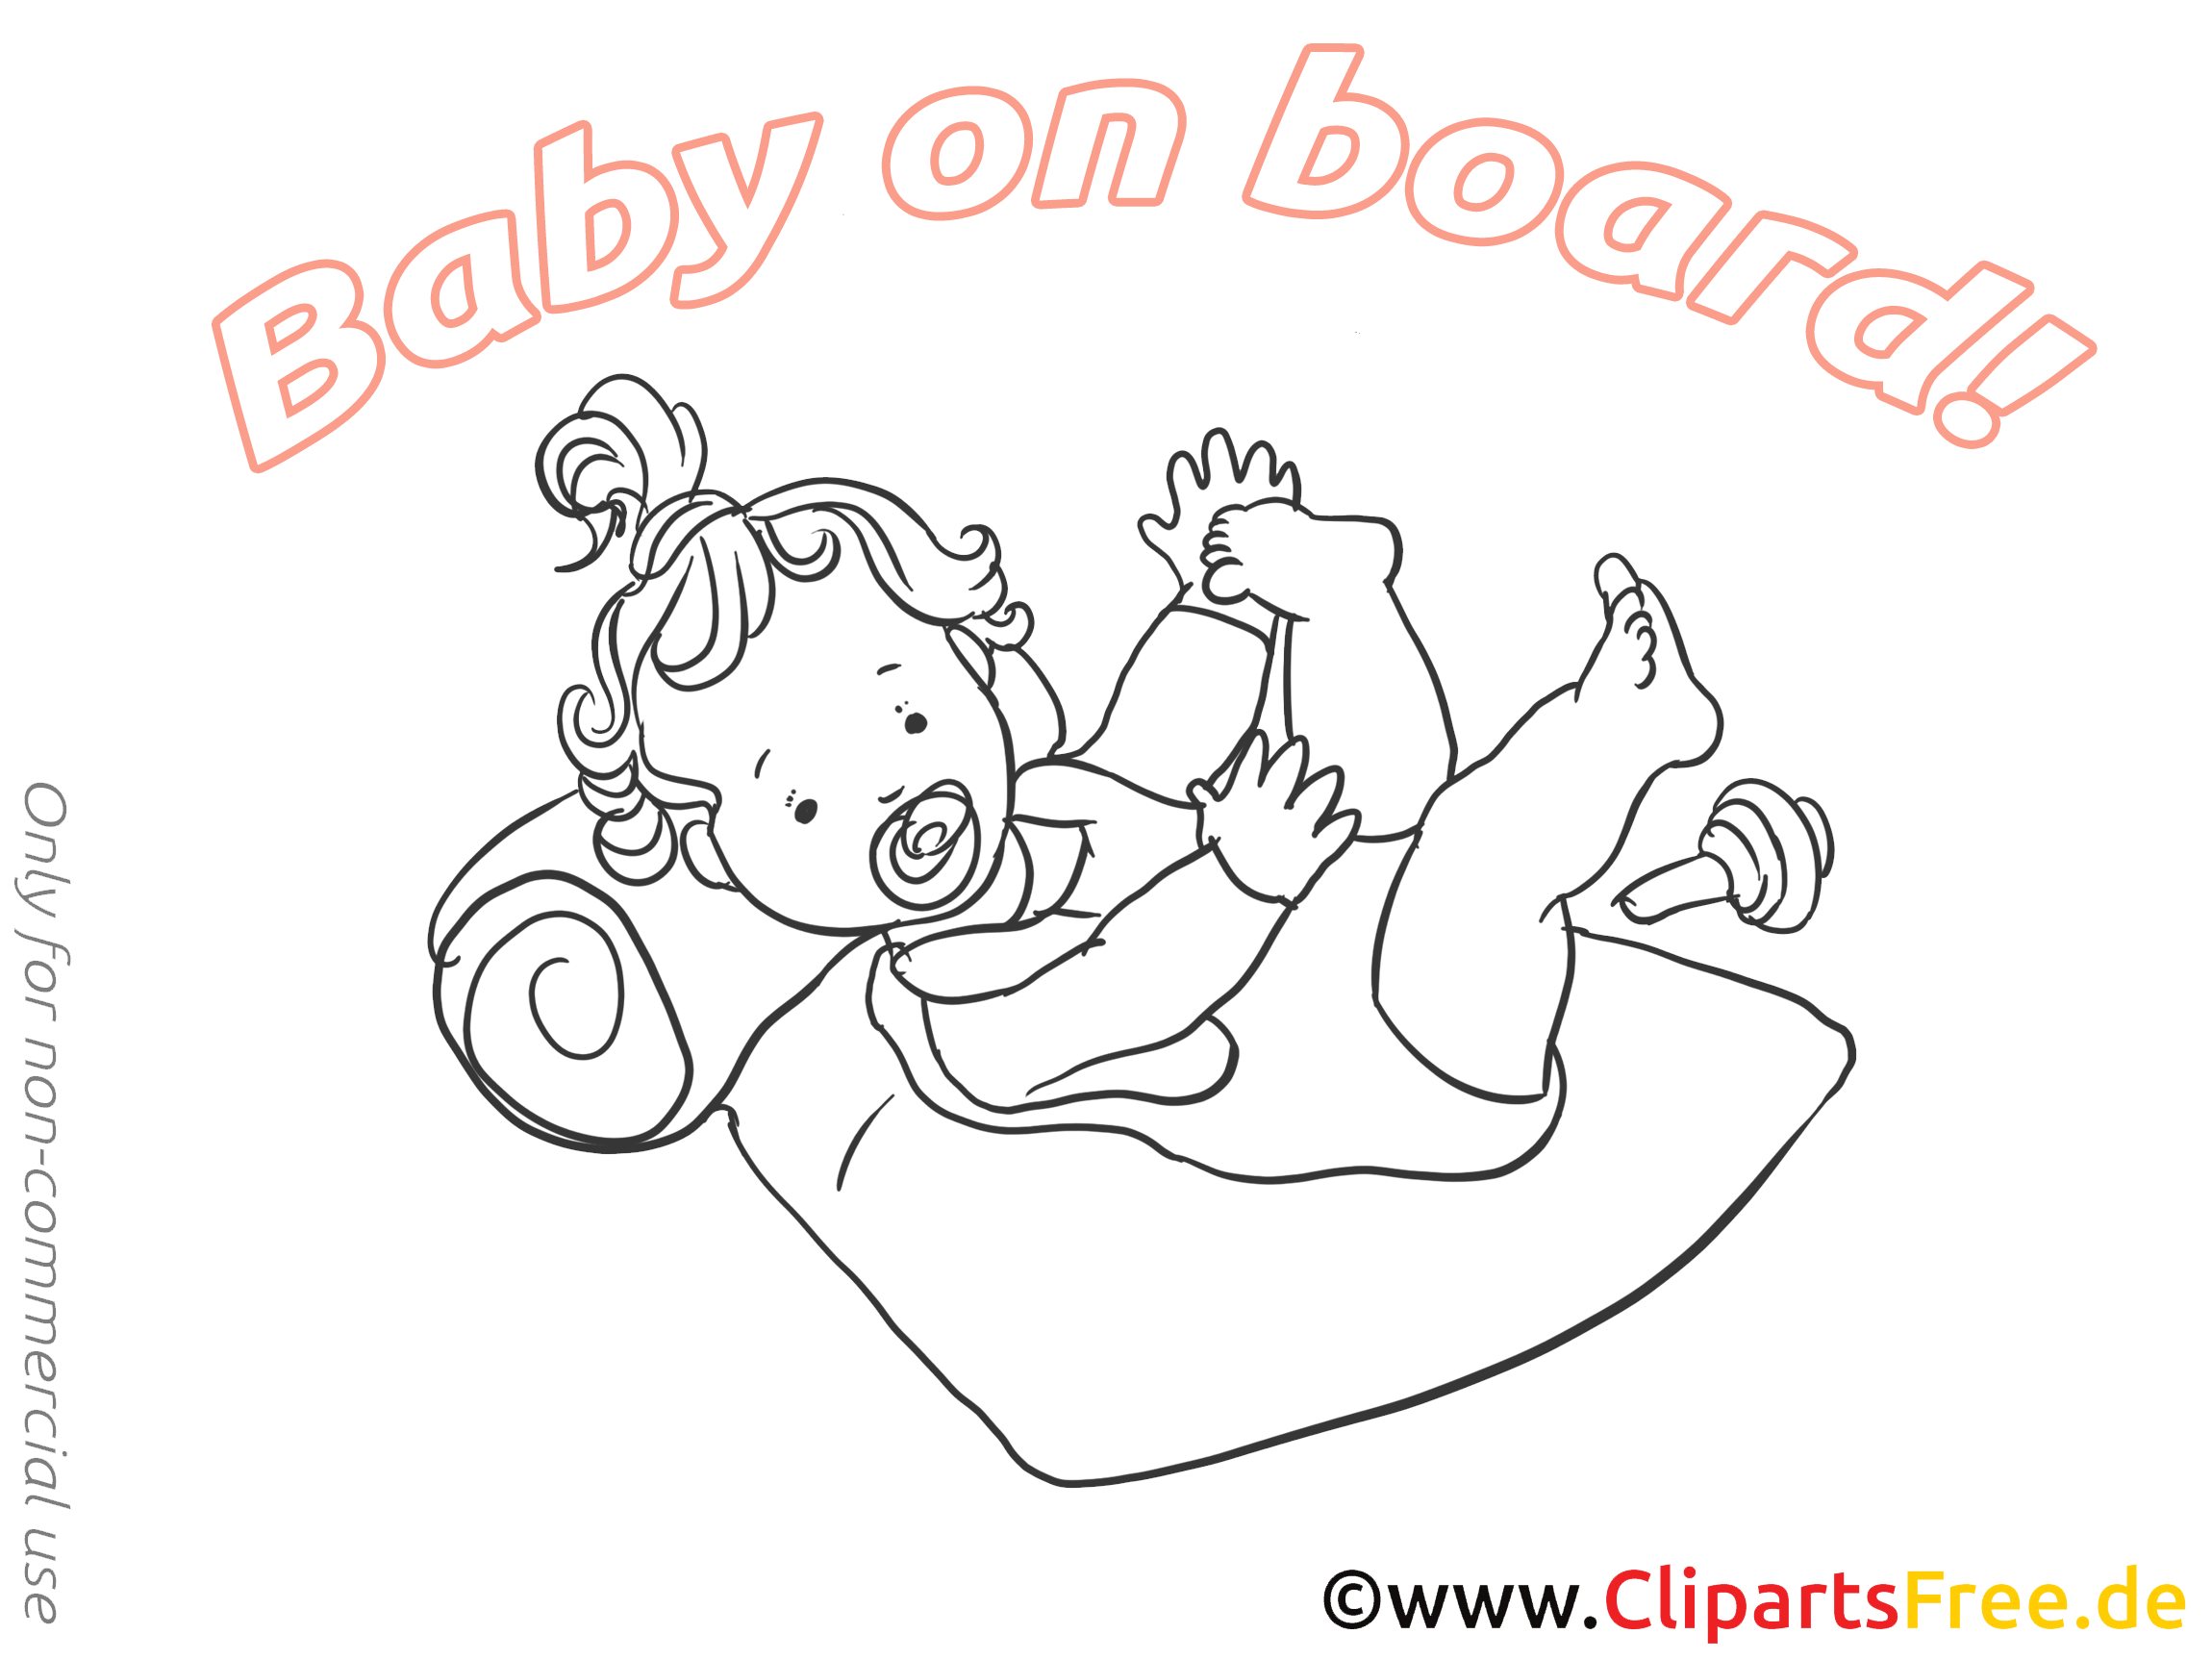 Coloriage images enfant – Bébé à bord clipart